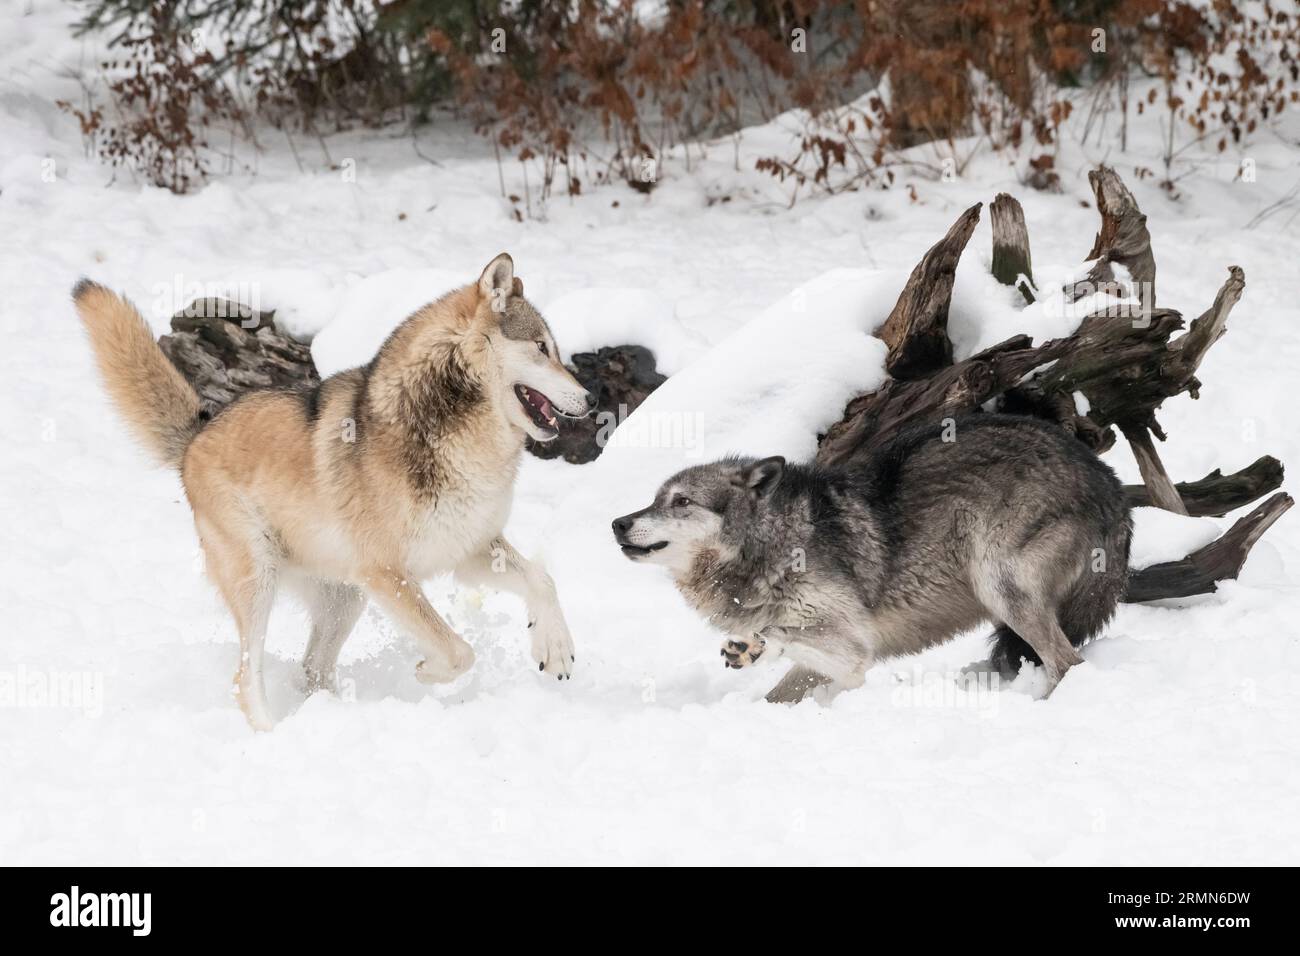 Amérique du Nord ; États-Unis ; Wyoming ; faune ; prédateurs; canin ; Loup ; Canis lupus ; couple reproducteur : dominance et comportement de reproduction ; captif Banque D'Images